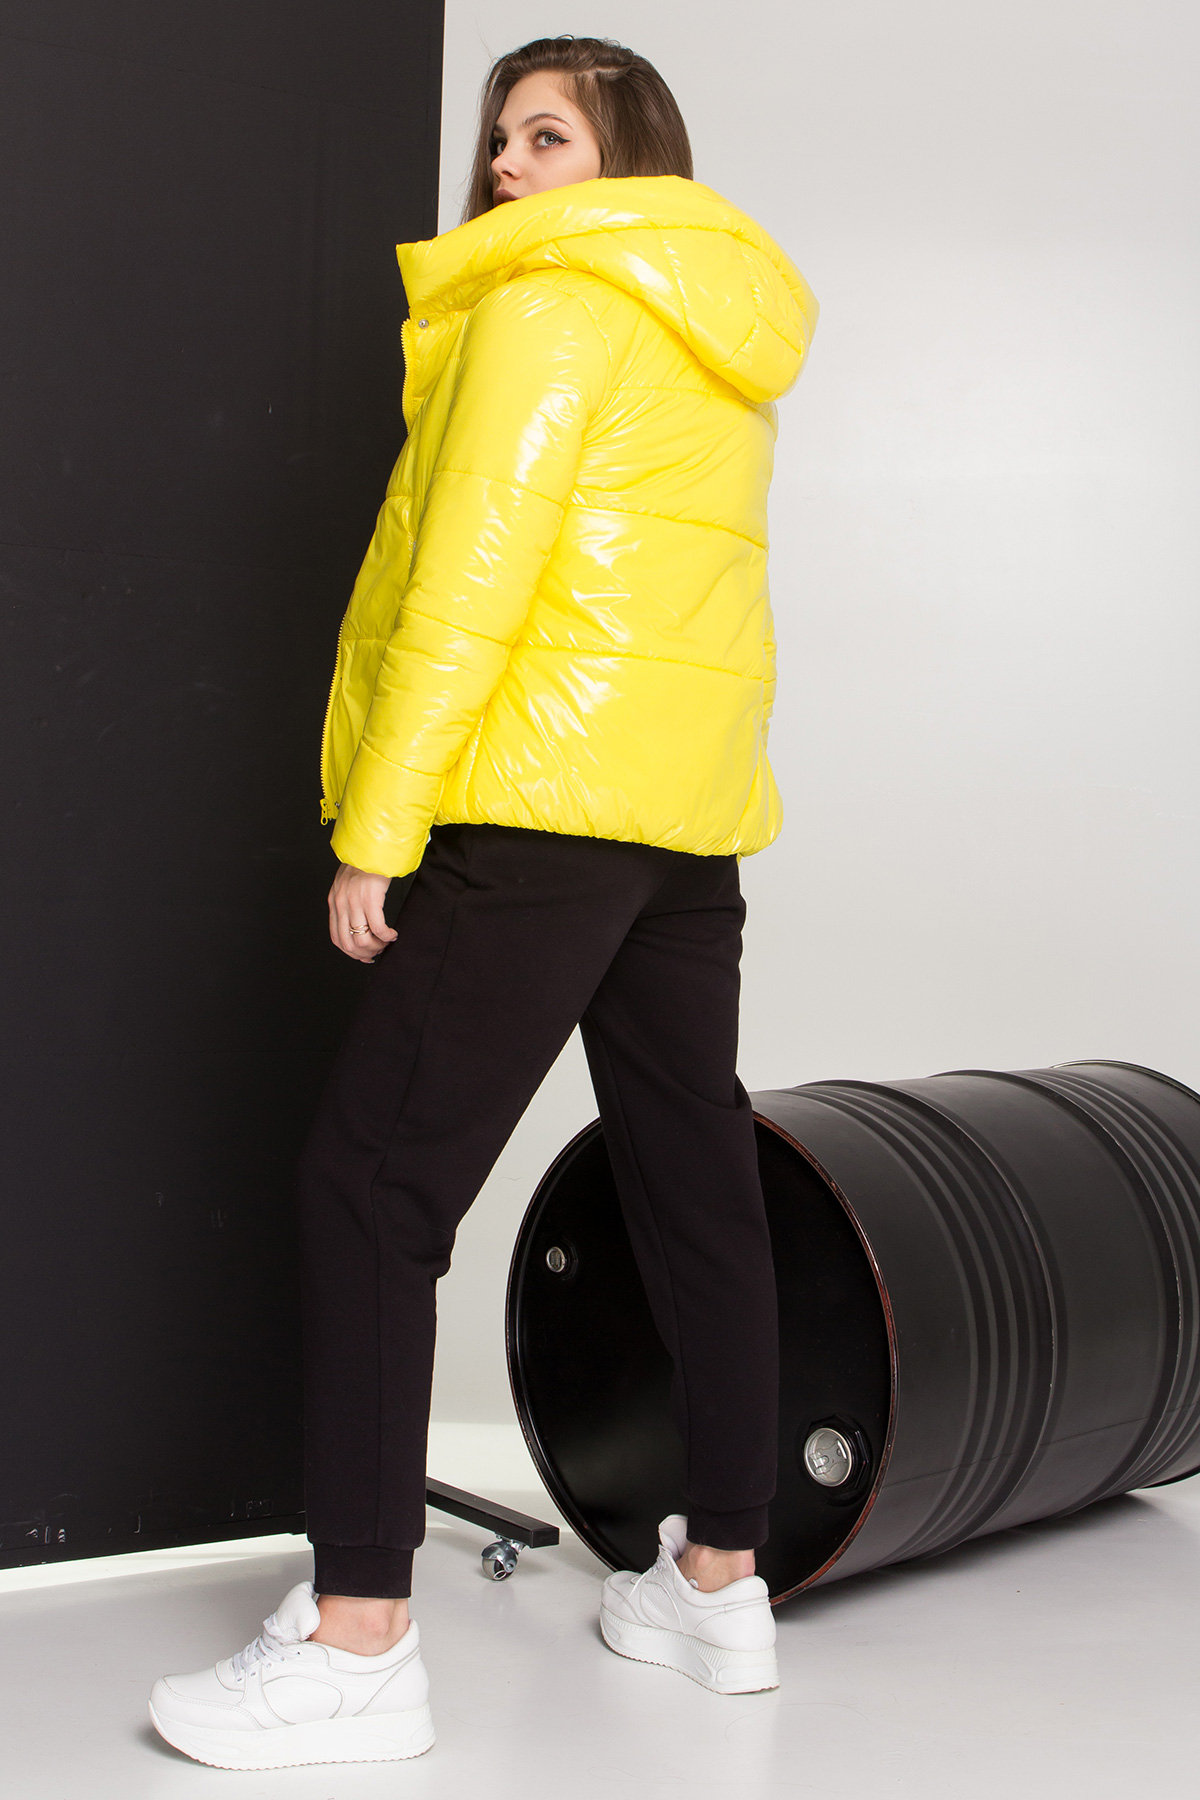 Короткая лаковая куртка Рито 8805 АРТ. 45244 Цвет: Желтый - фото 5, интернет магазин tm-modus.ru